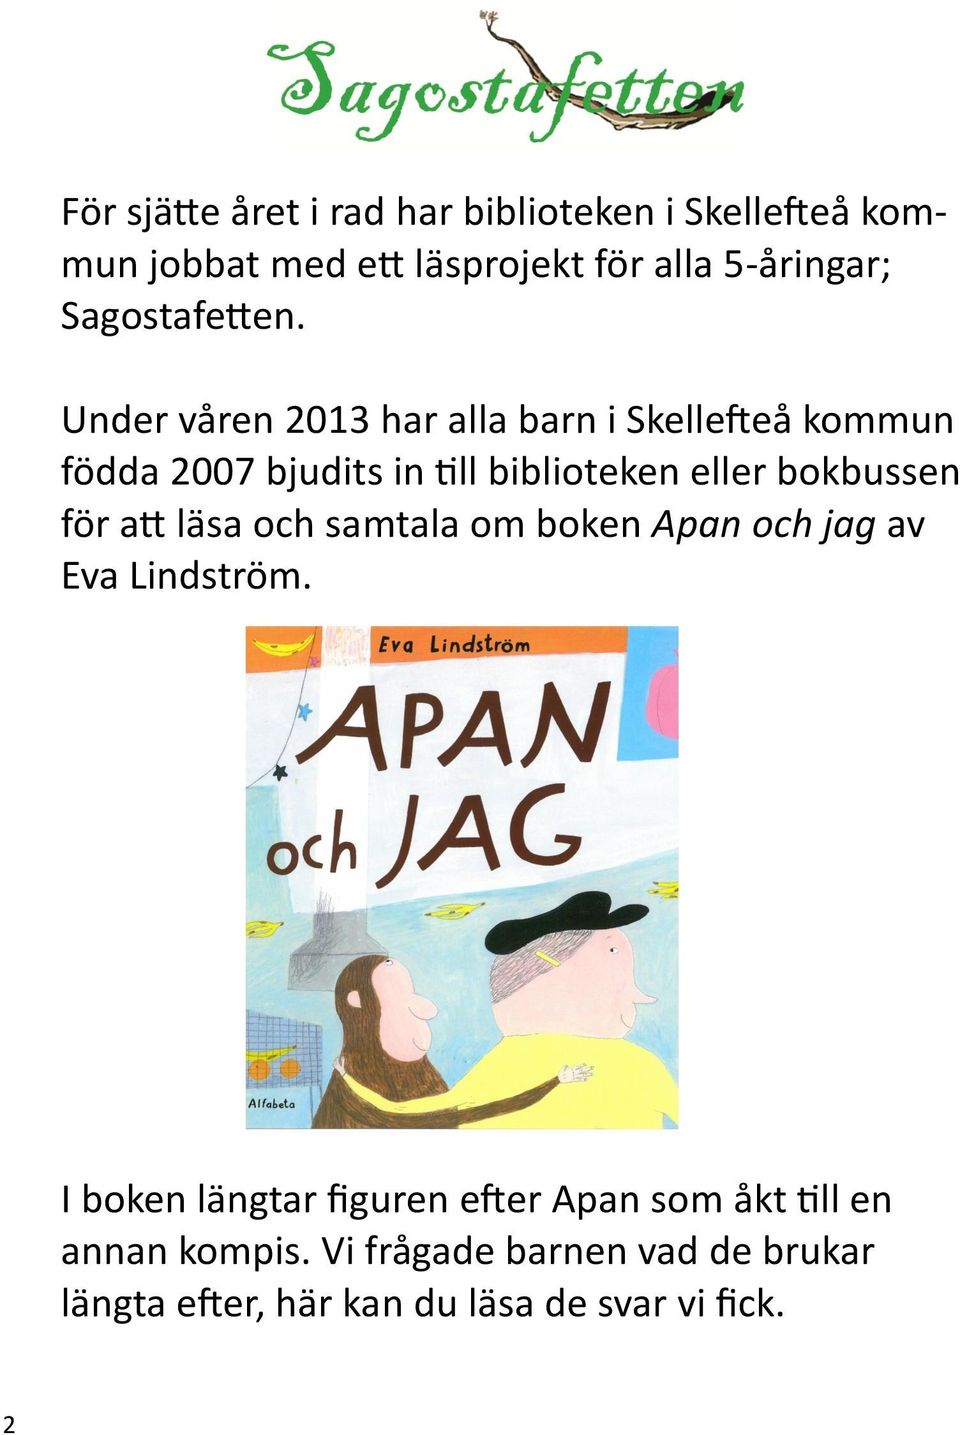 Under våren 2013 har alla barn i Skellefteå kommun födda 2007 bjudits in till biblioteken eller bokbussen